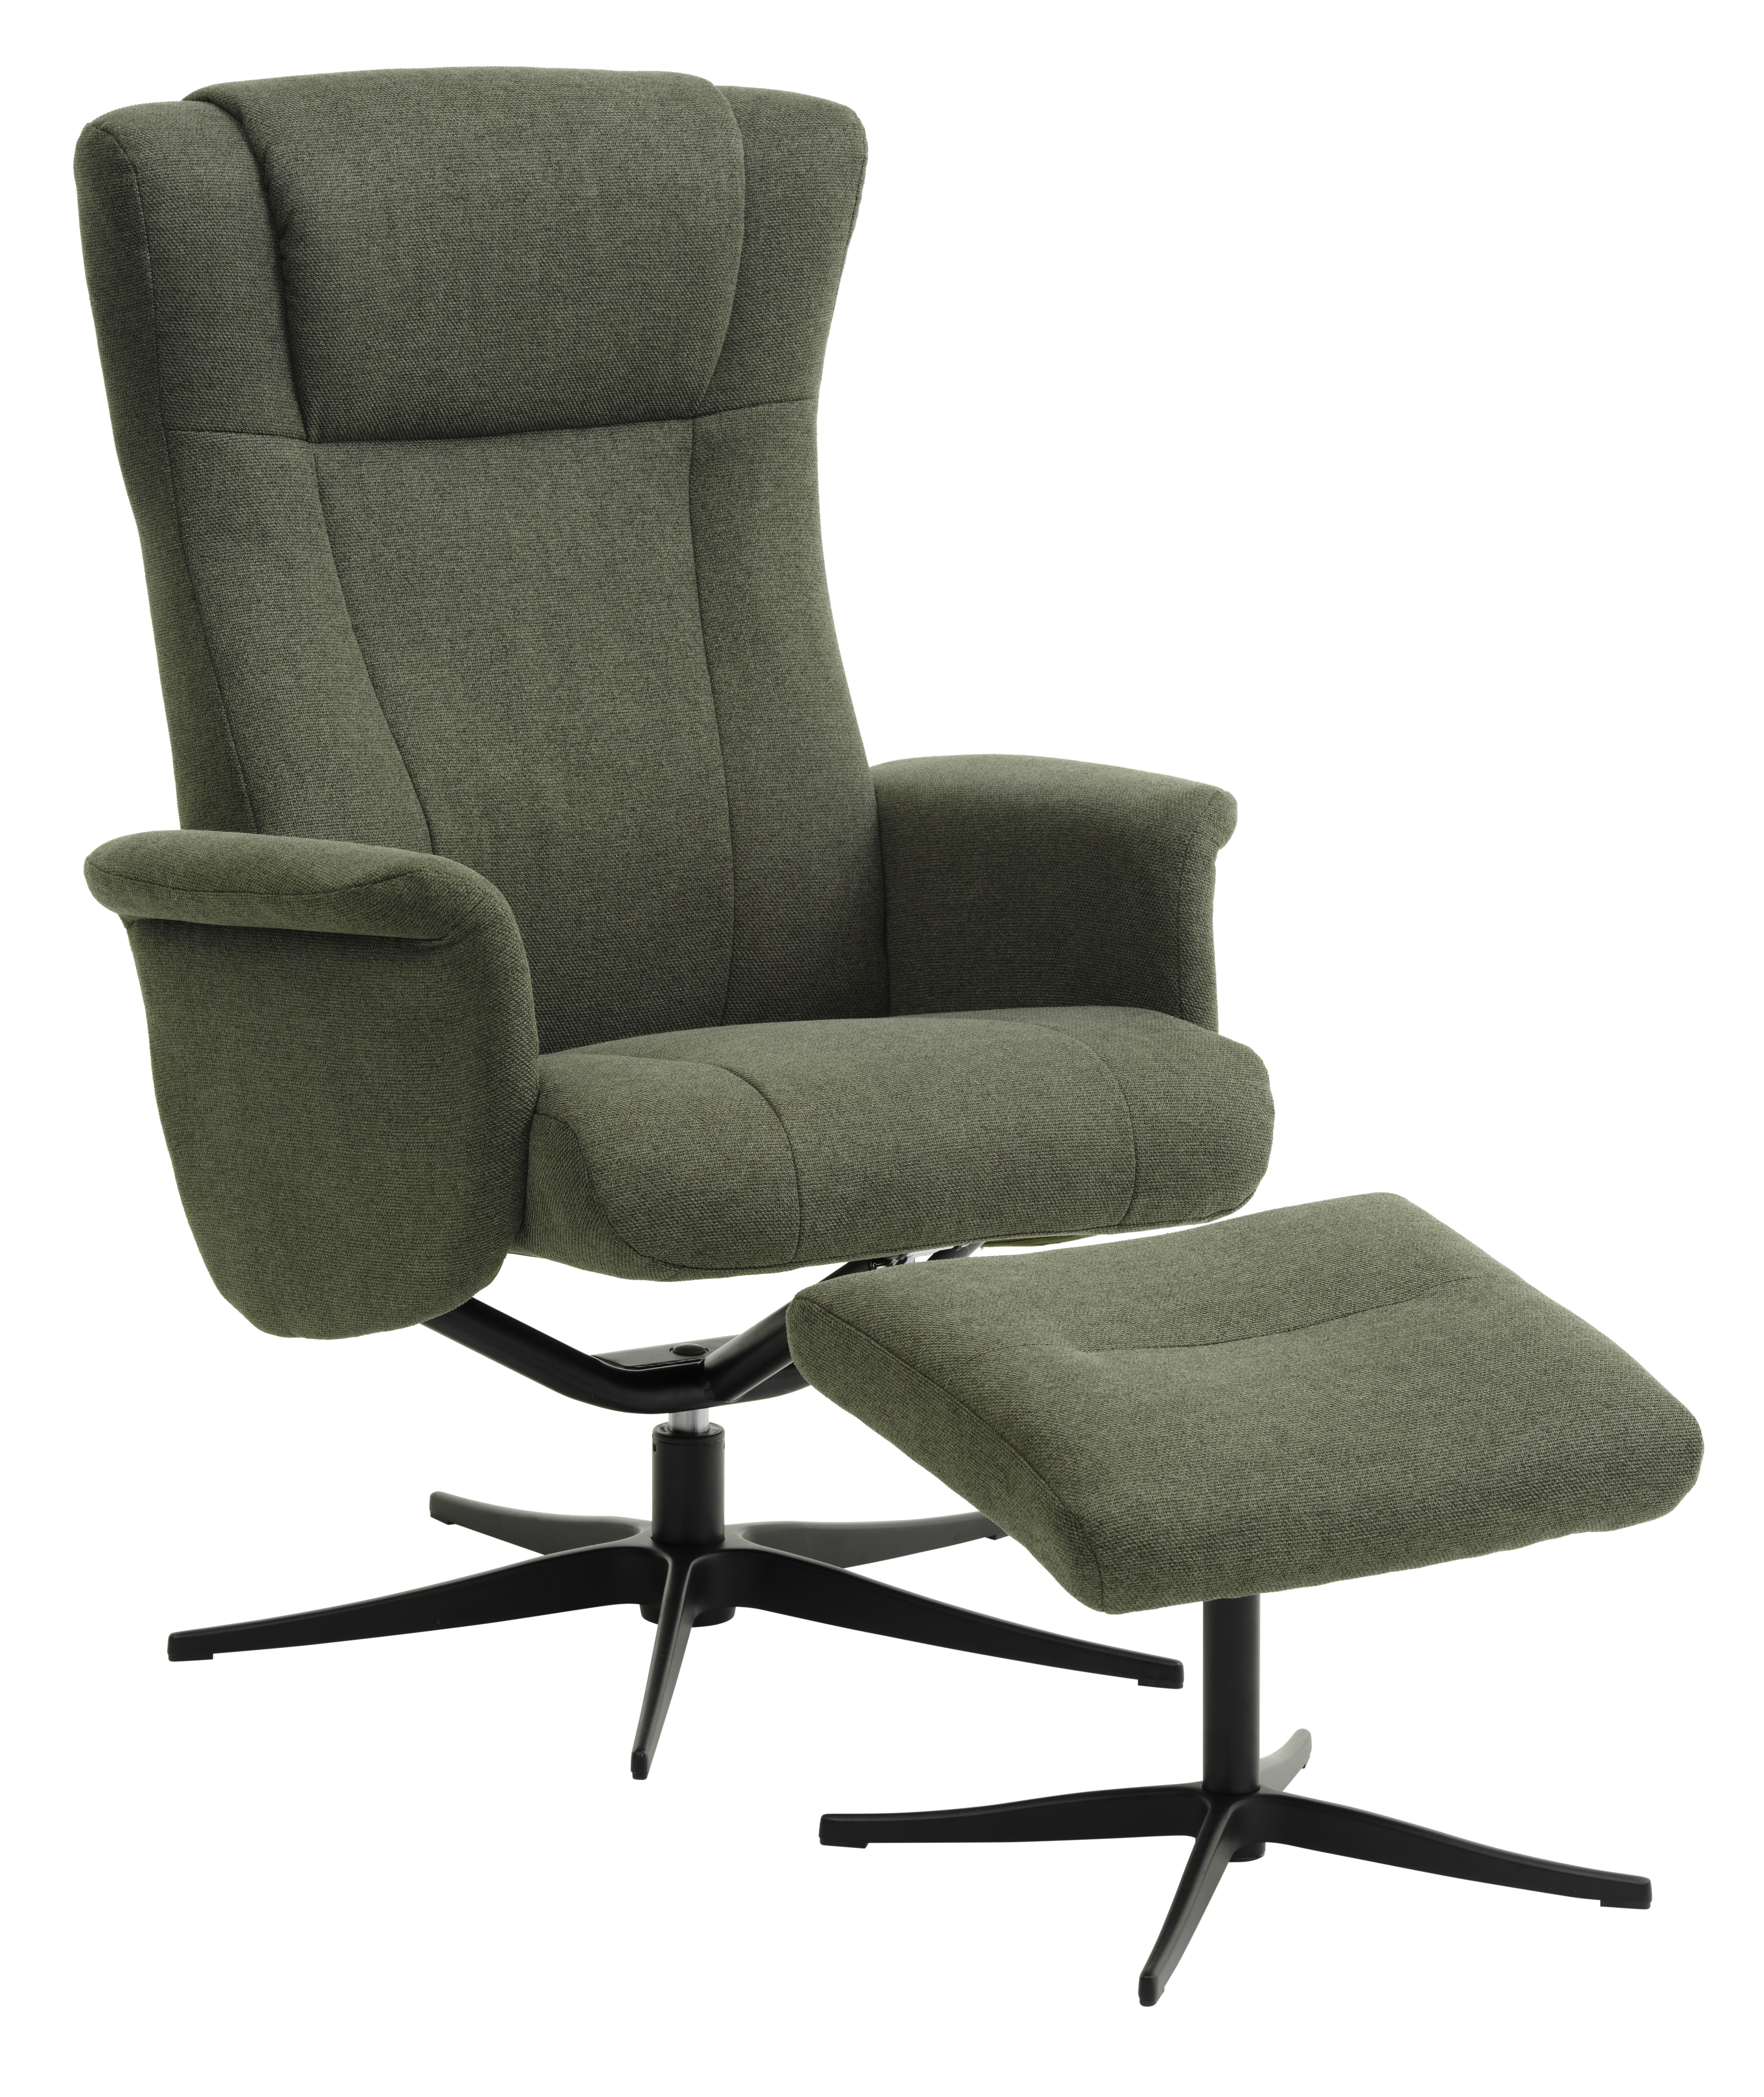 Billede af Liam recliner lænestol, inkl. fodskammel - vinter mosgrøn polyester stof og sort aluminium